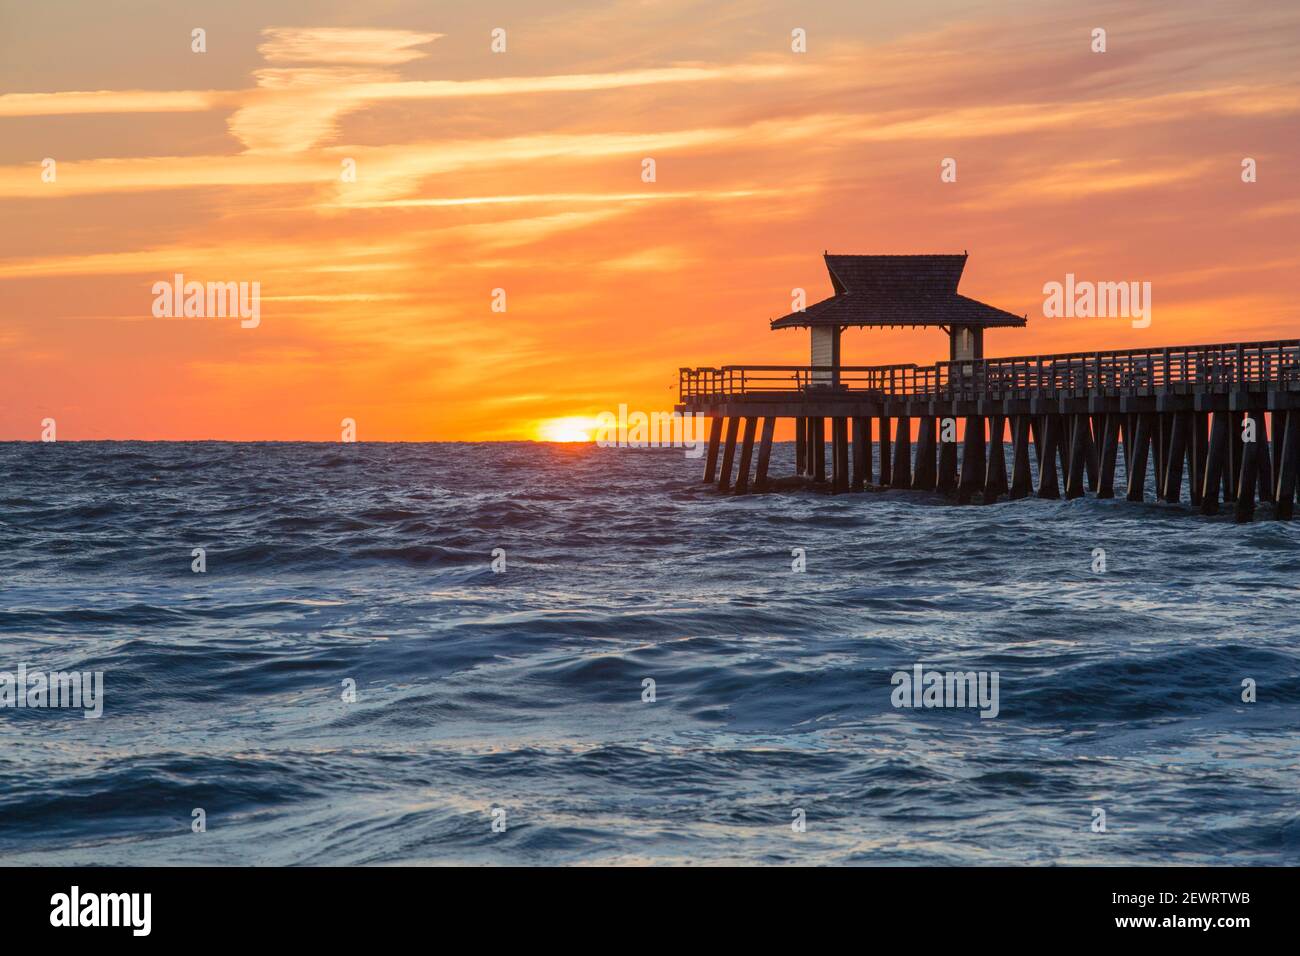 Blick über den Golf von Mexiko vom Strand neben Naples Pier, Sonnenuntergang, goldener Himmel über Horizont, Neapel, Florida, Vereinigte Staaten von Amerika Stockfoto